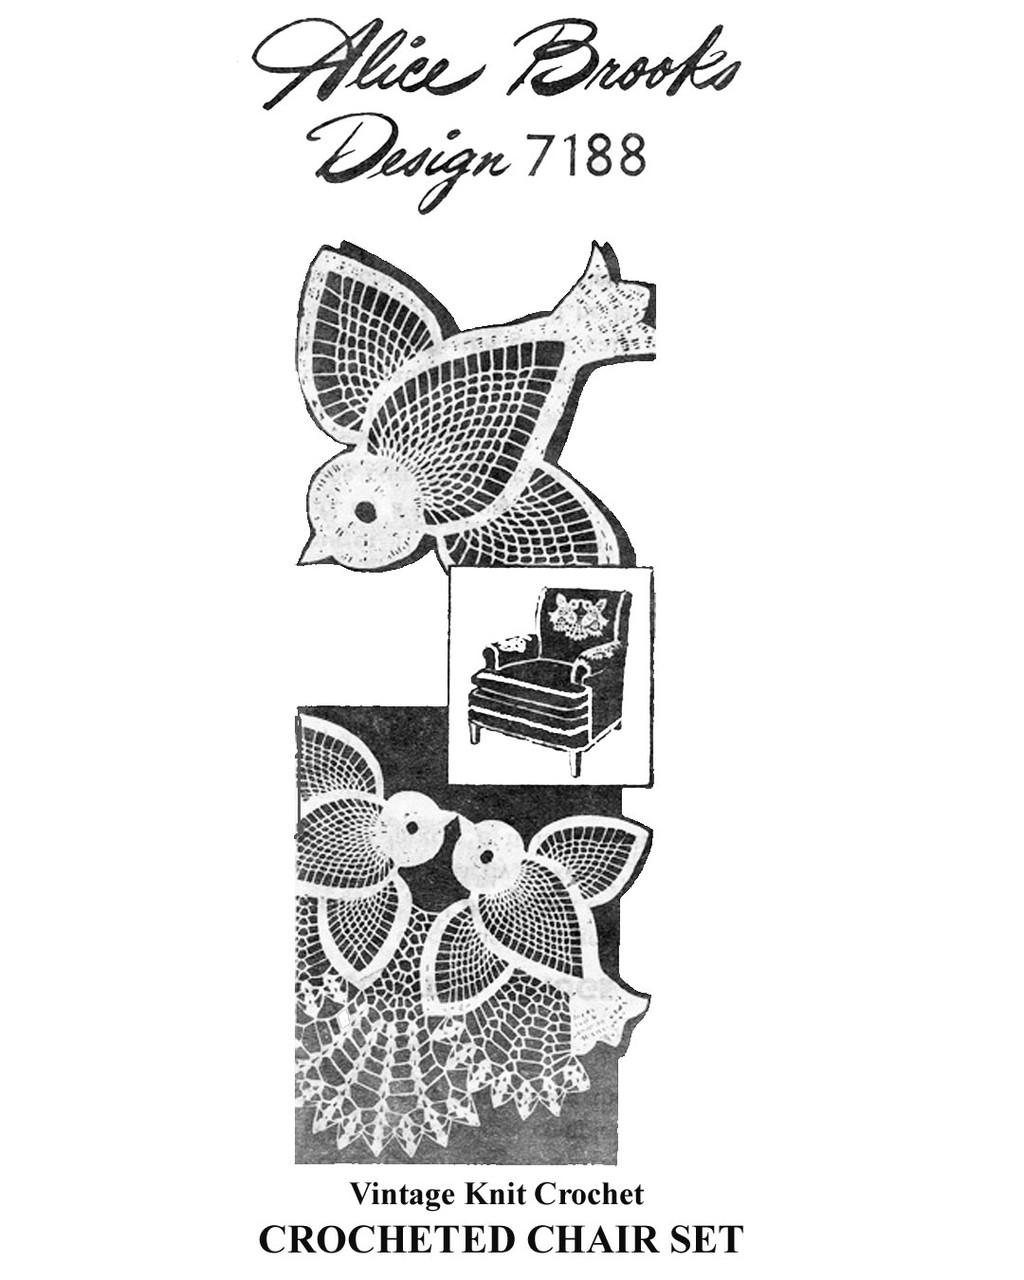 Bluebird Chair Doily Crochet Pattern Design 7188